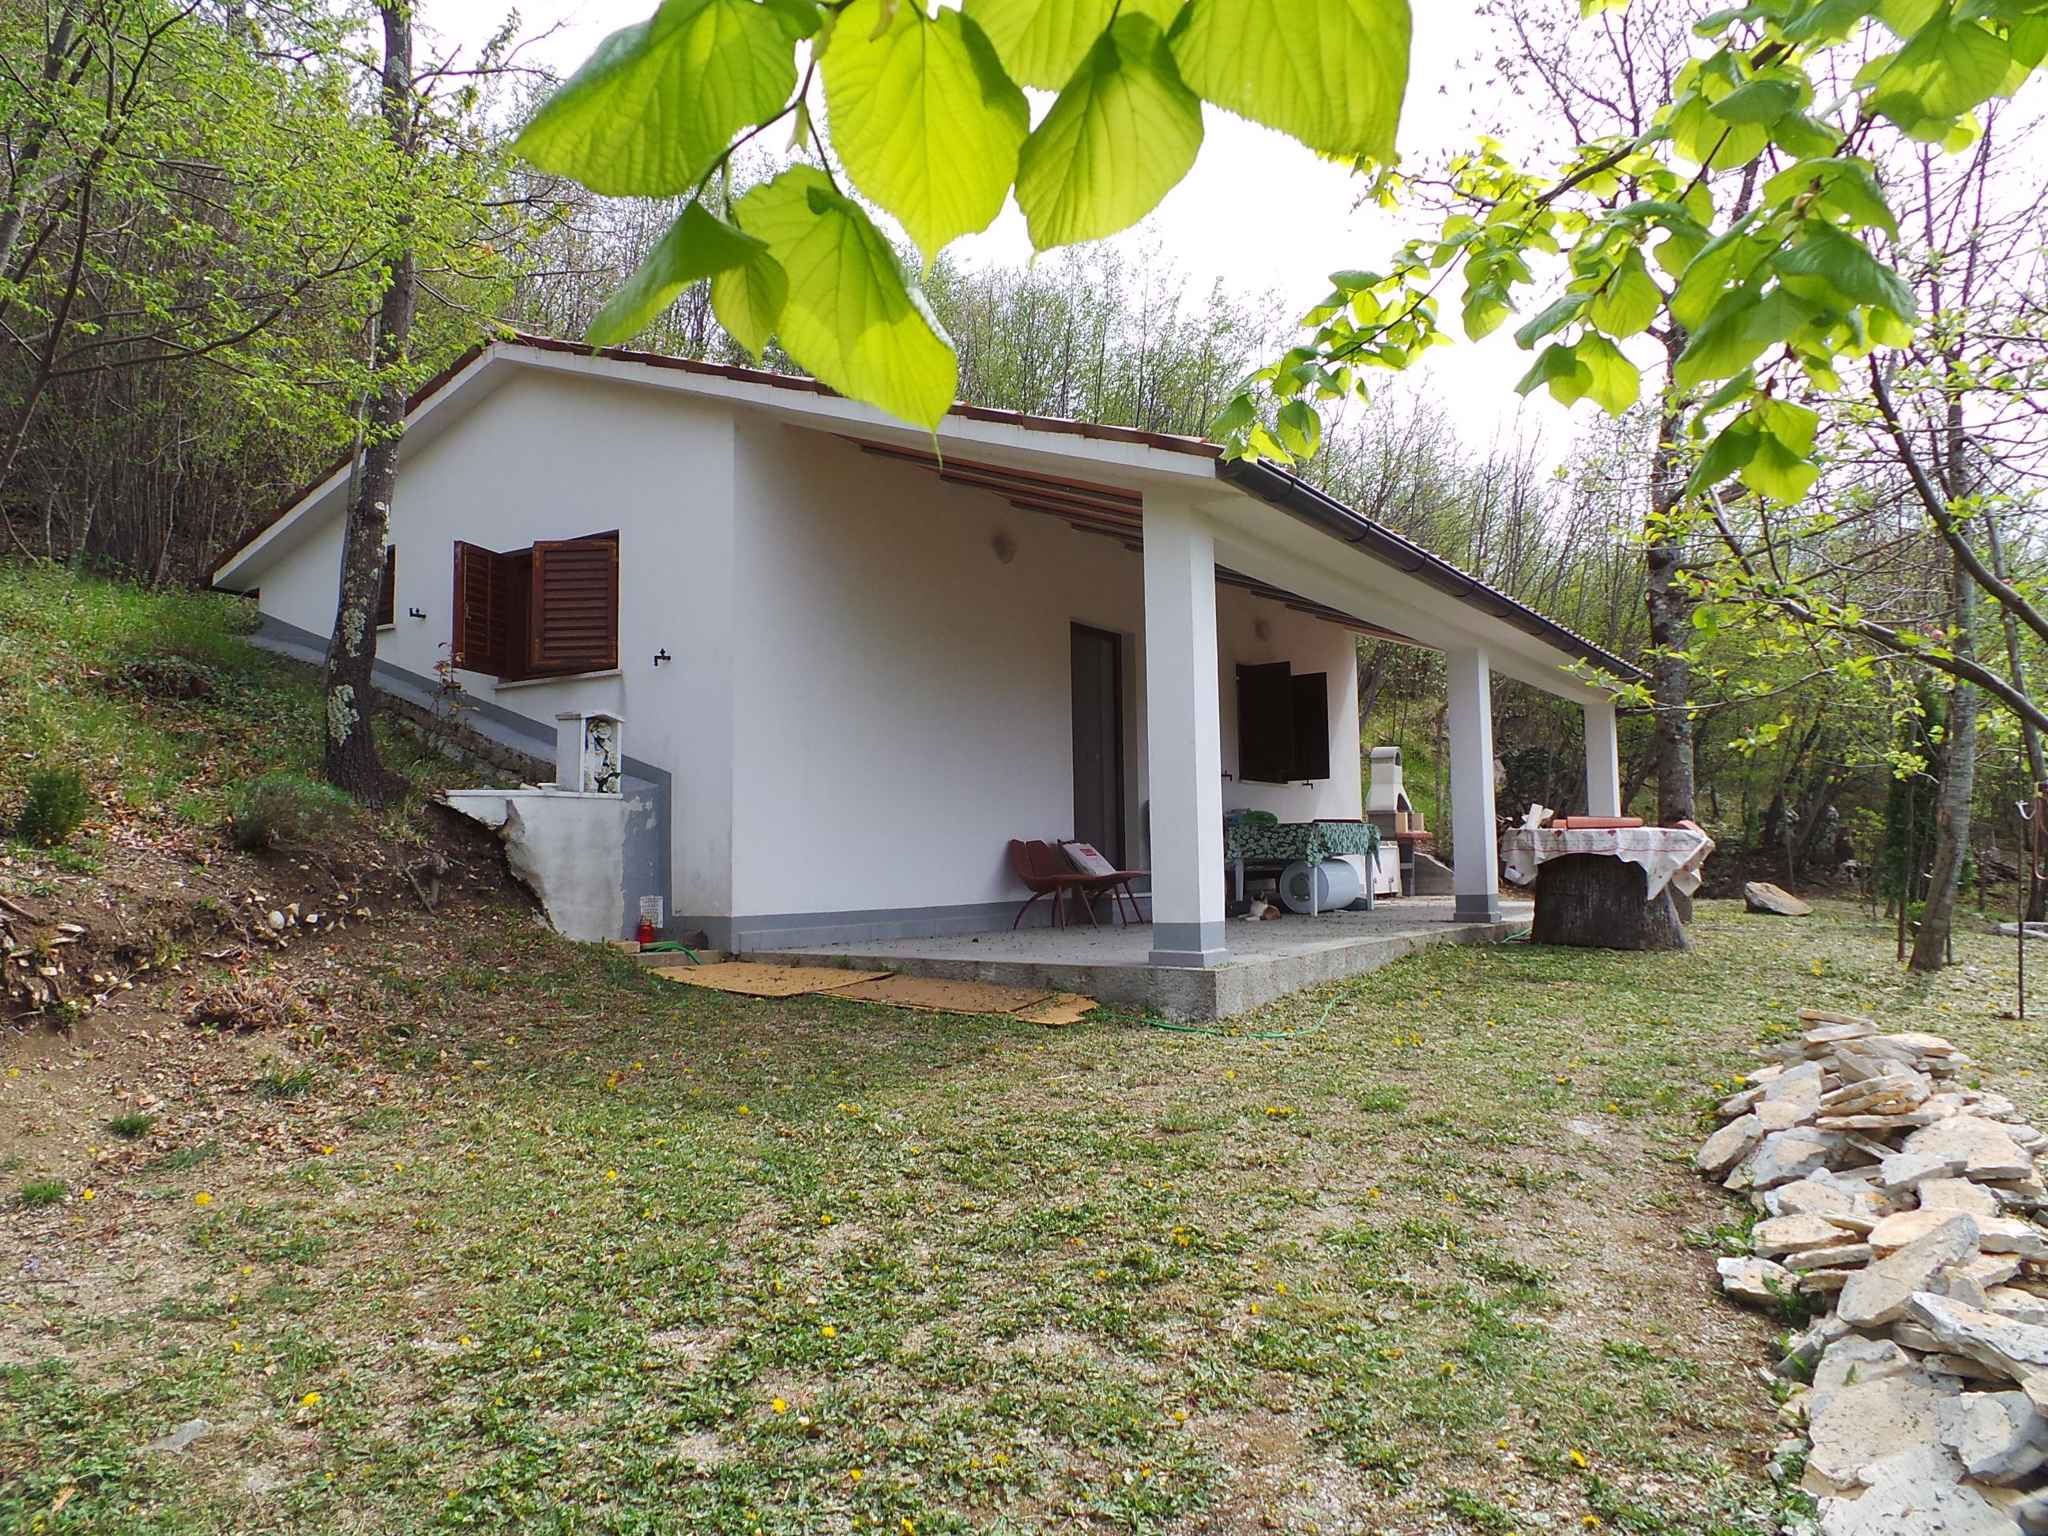 Ferienhaus für Naturfreunde in ruhiger Lage Ferienhaus in Kroatien